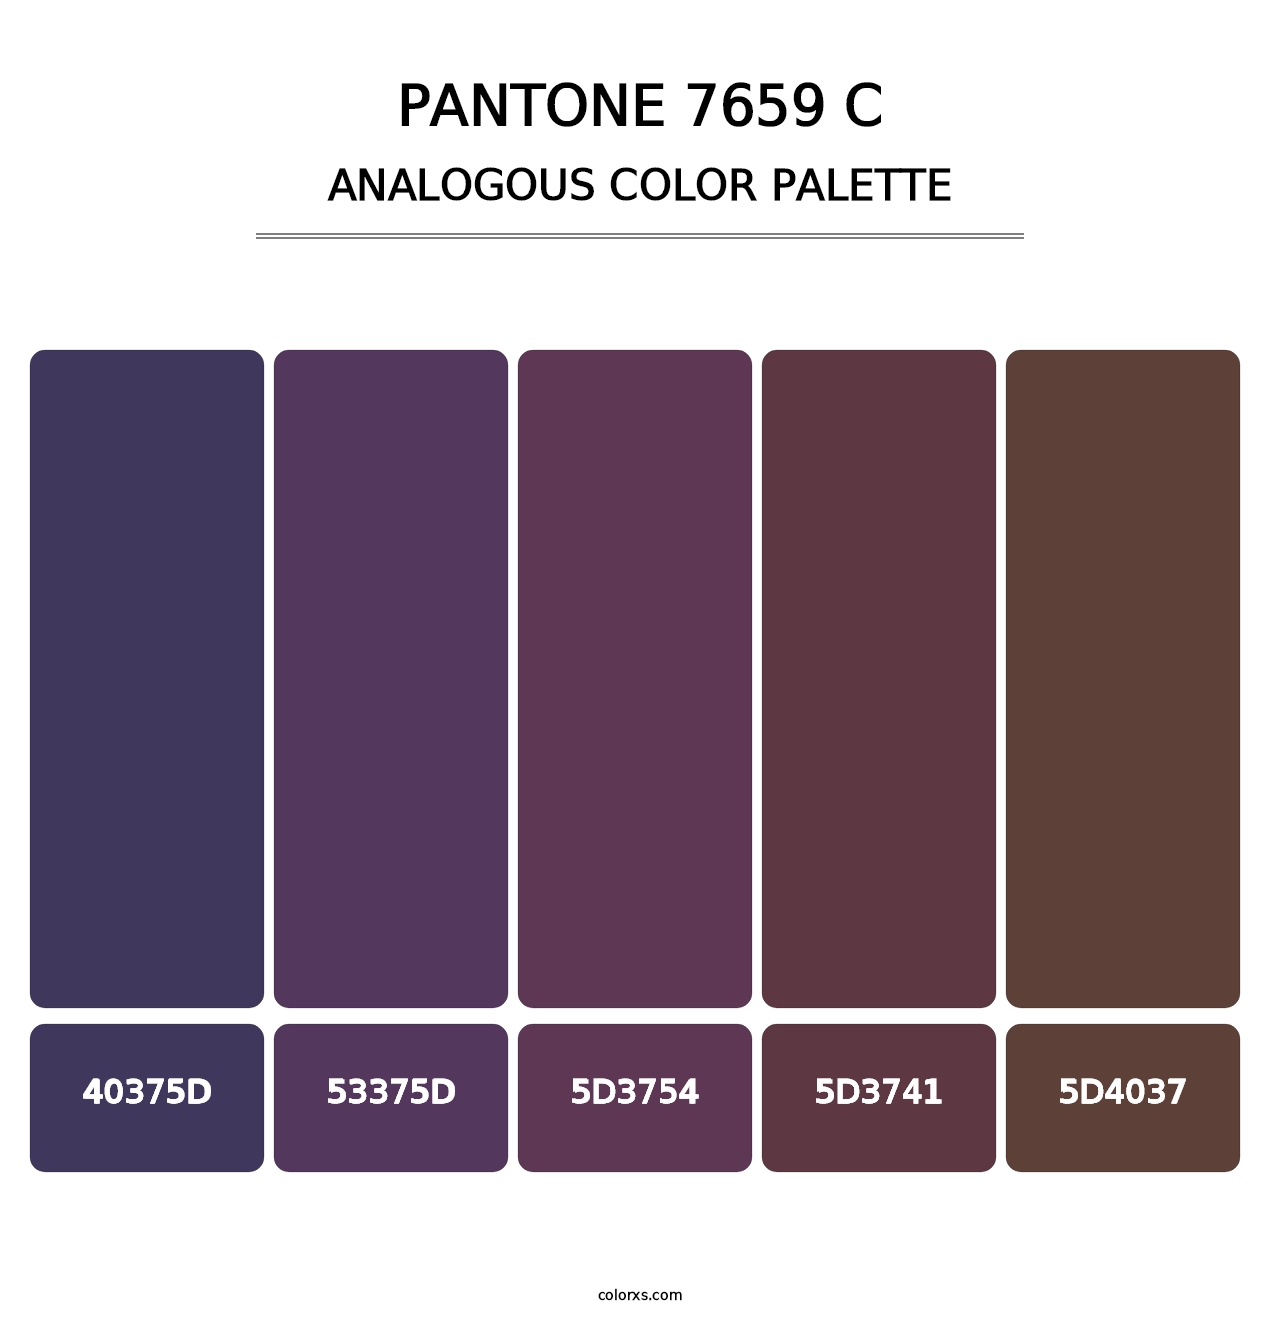 PANTONE 7659 C - Analogous Color Palette